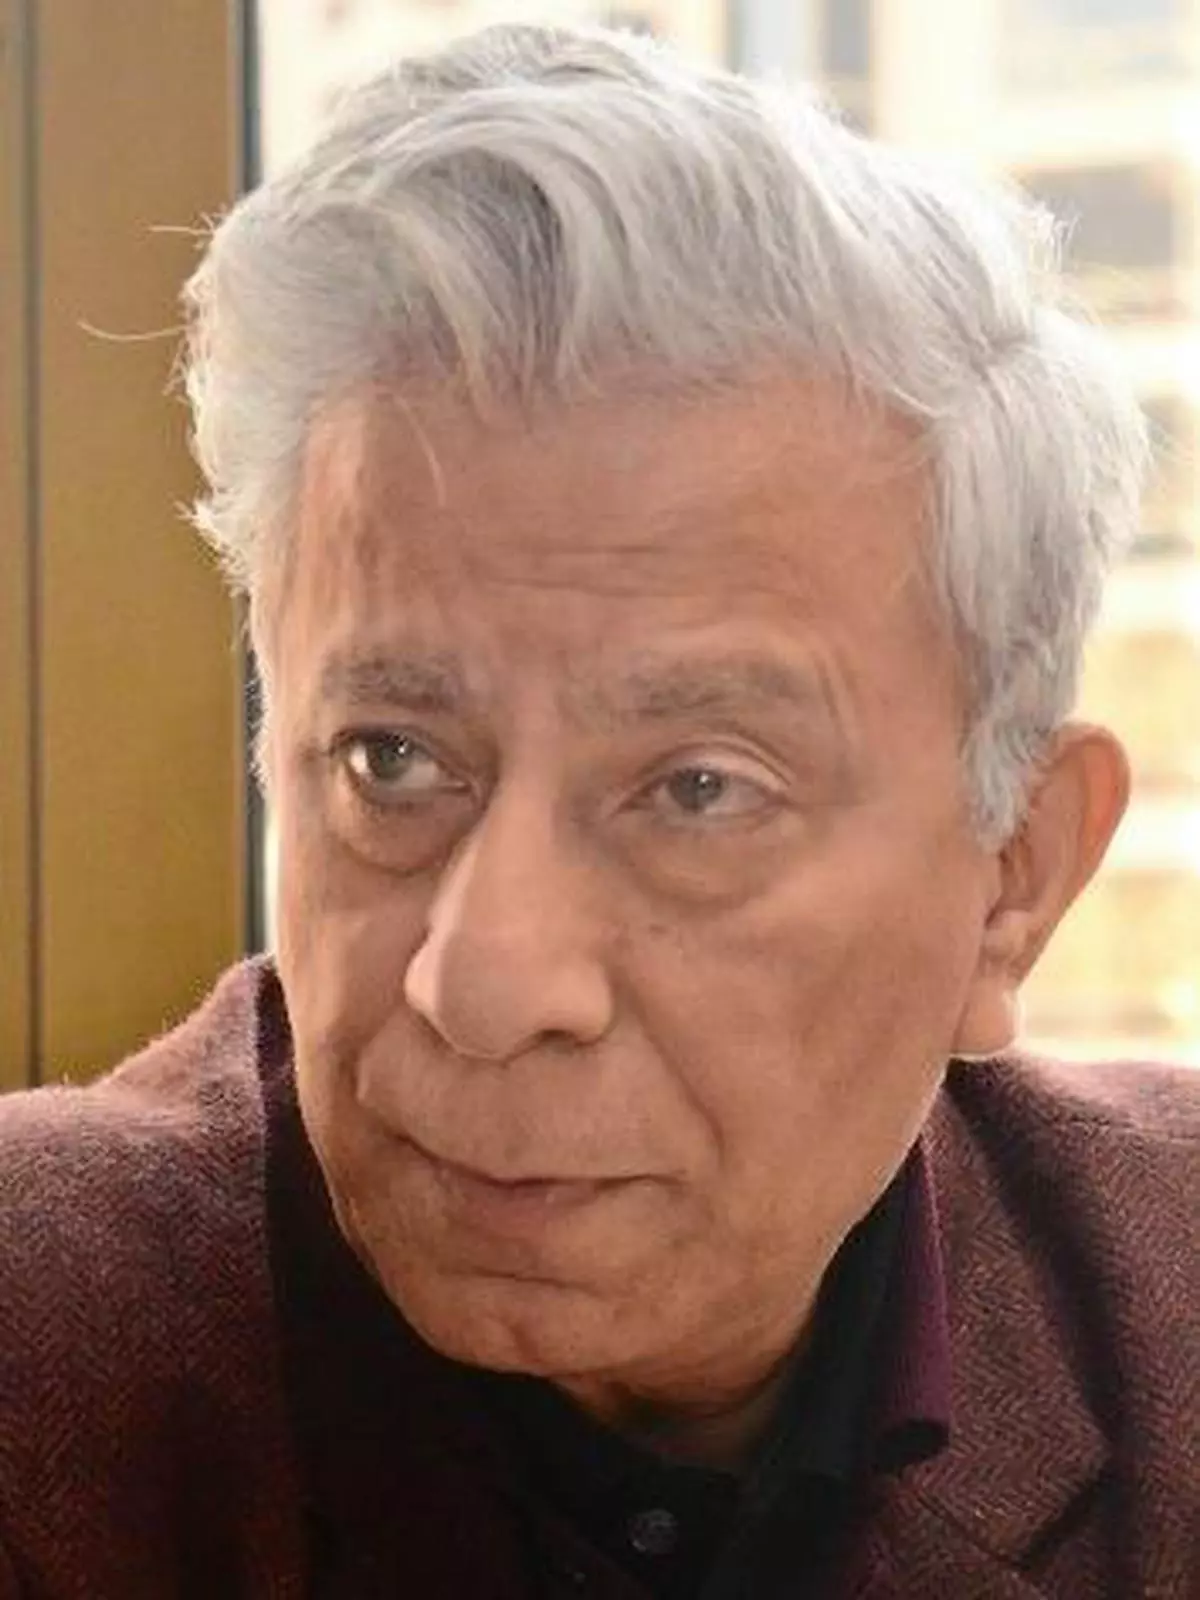 Sociologist Dipankar Gupta